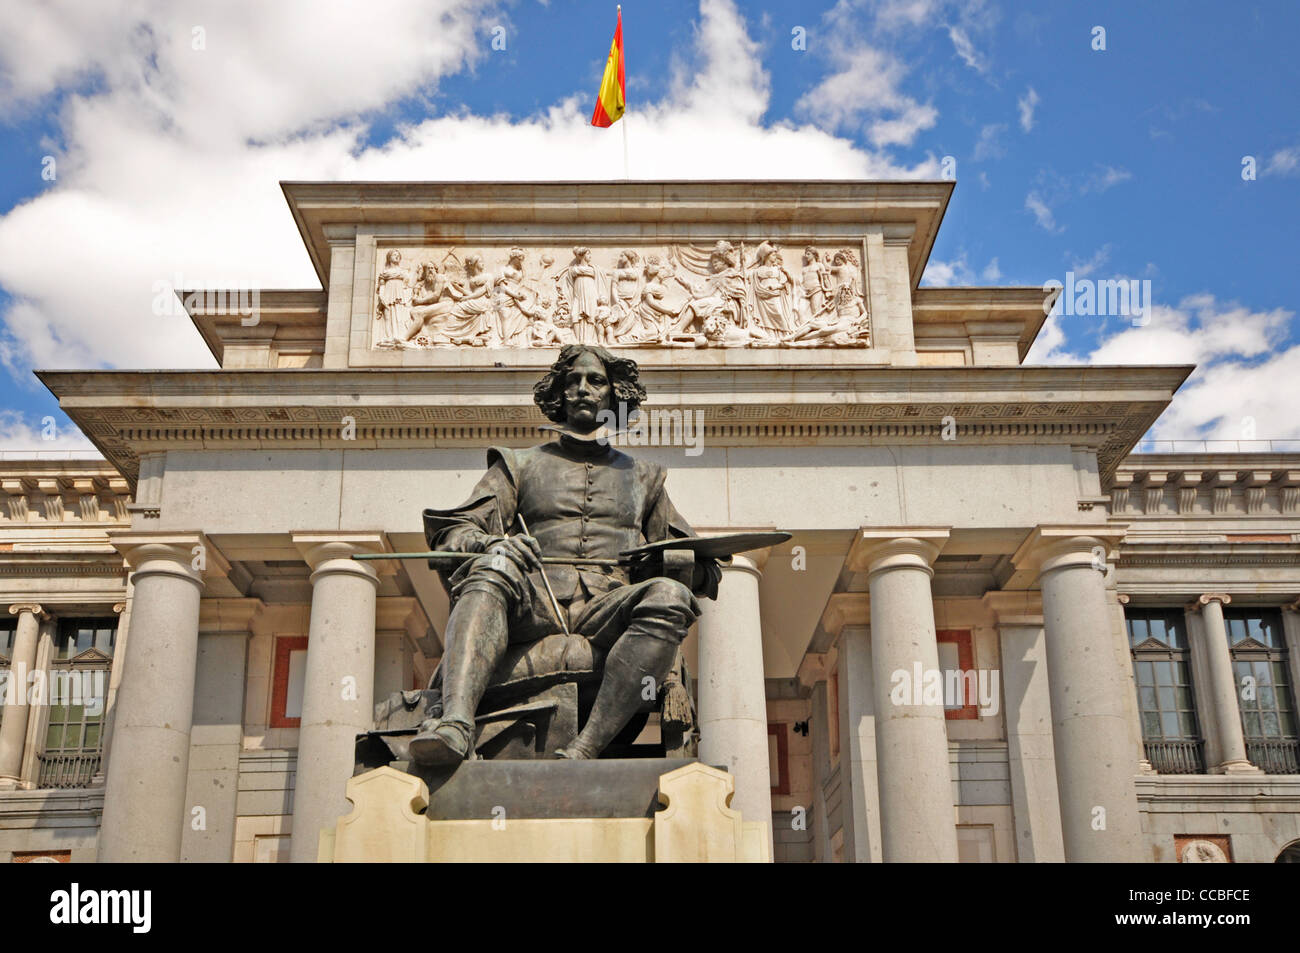 EUROPE, SPAIN, Madrid, Prado Museum, statue of Velazquez Stock Photo